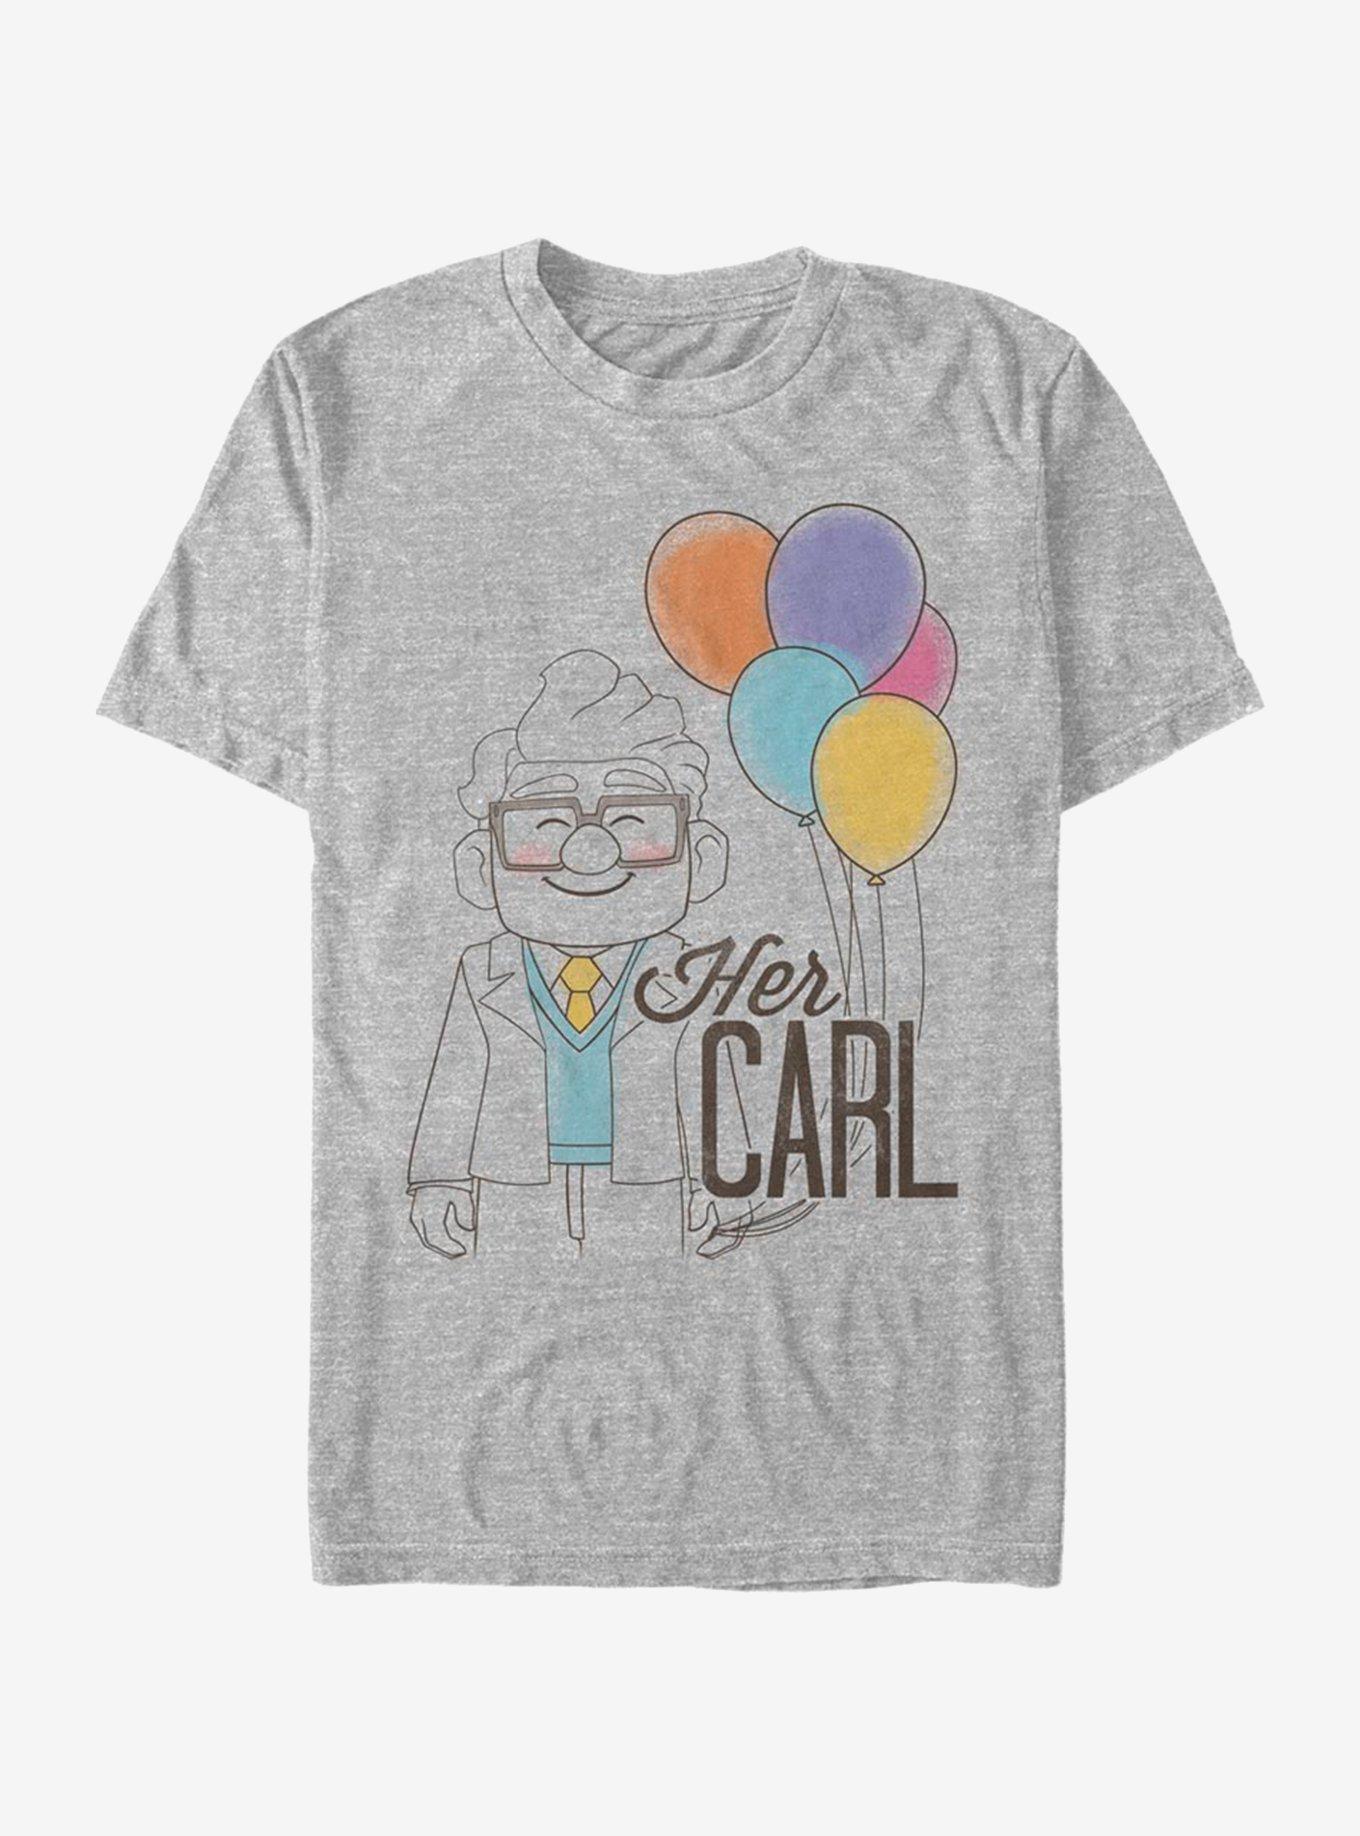 Disney Pixar Up Her Carl T-Shirt